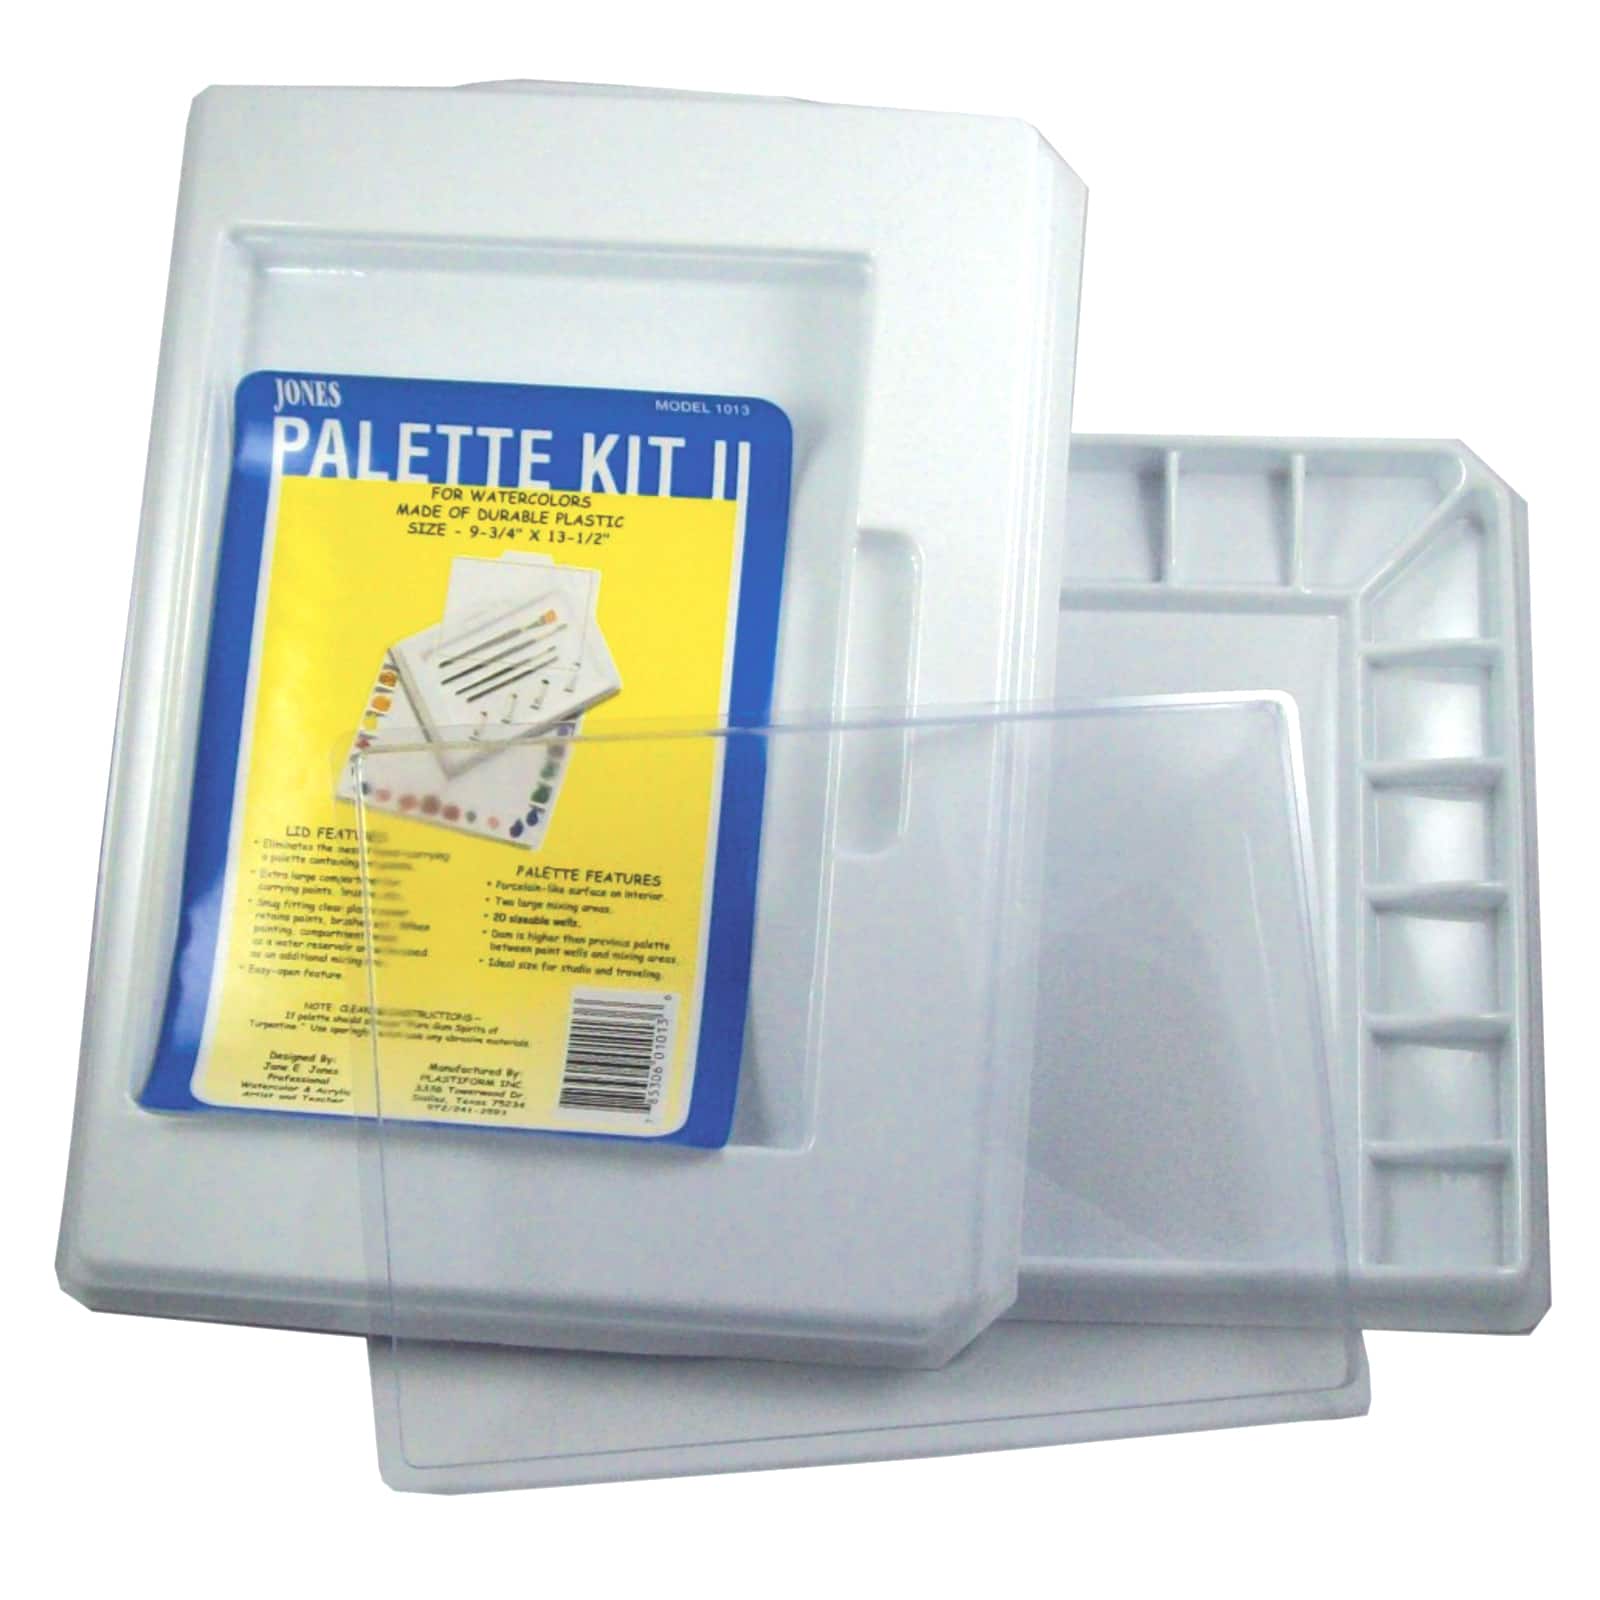 Palette Master Jones Palette Kit II | Michaels